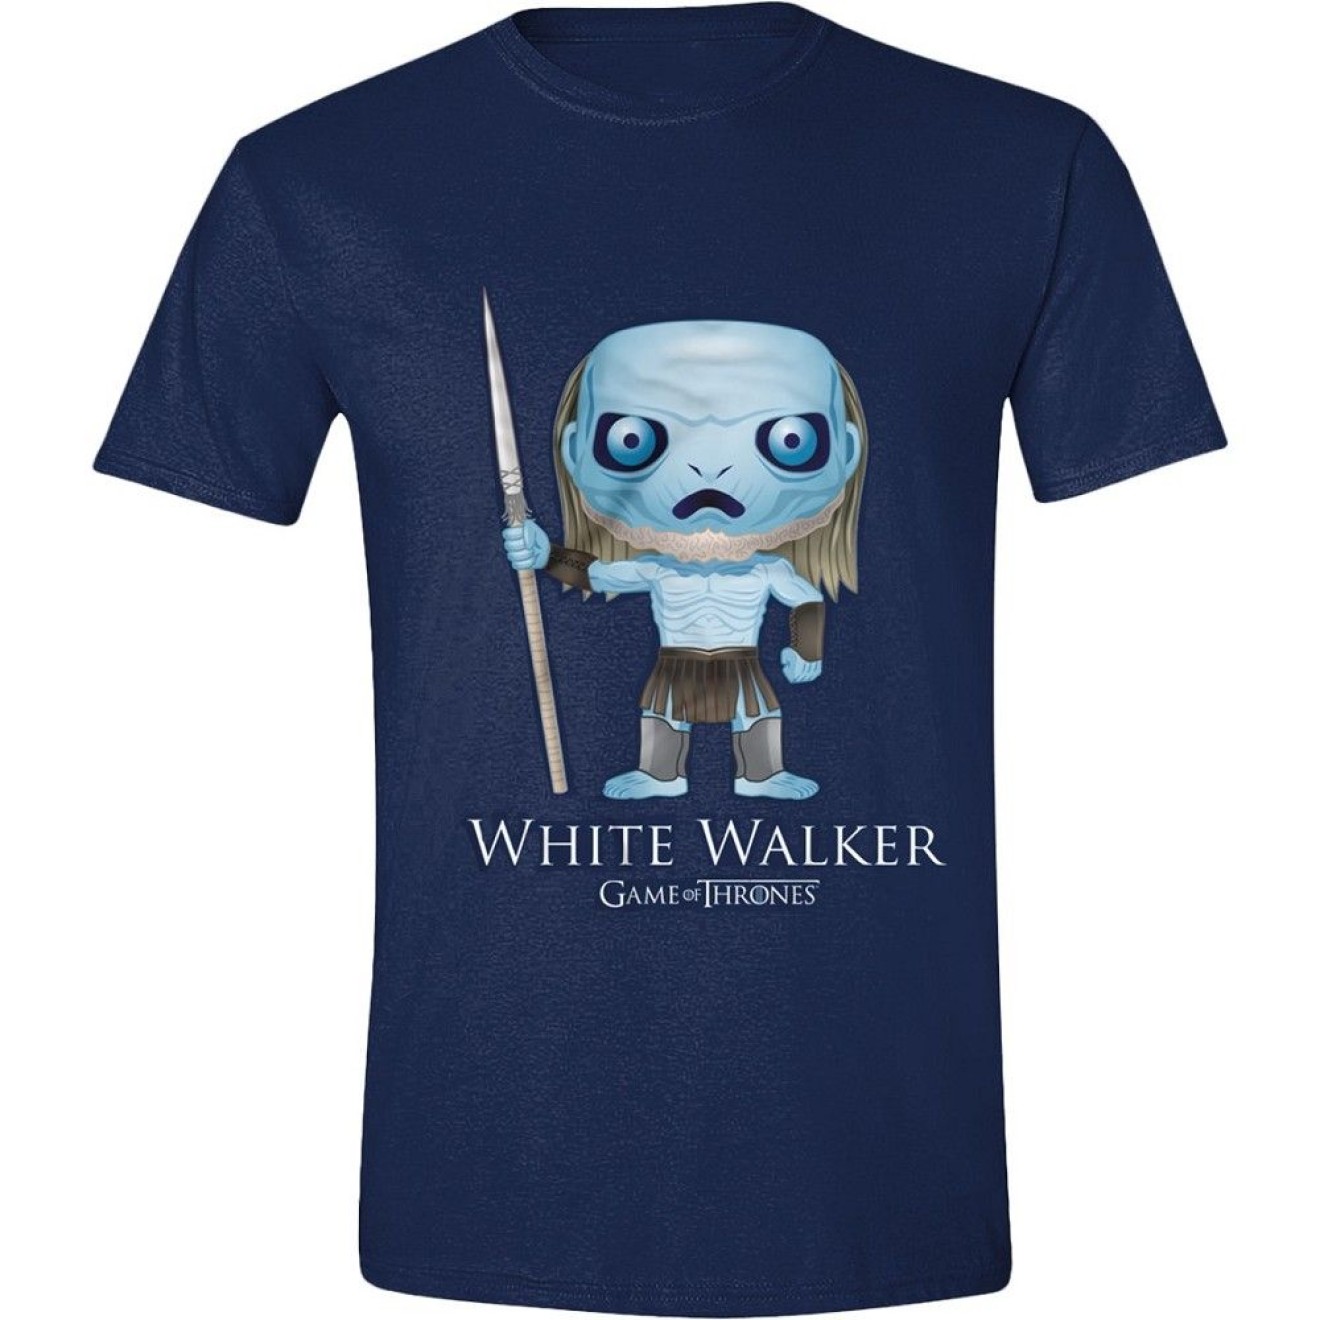 Game of Thrones T-Shirt Pop Art White Walker